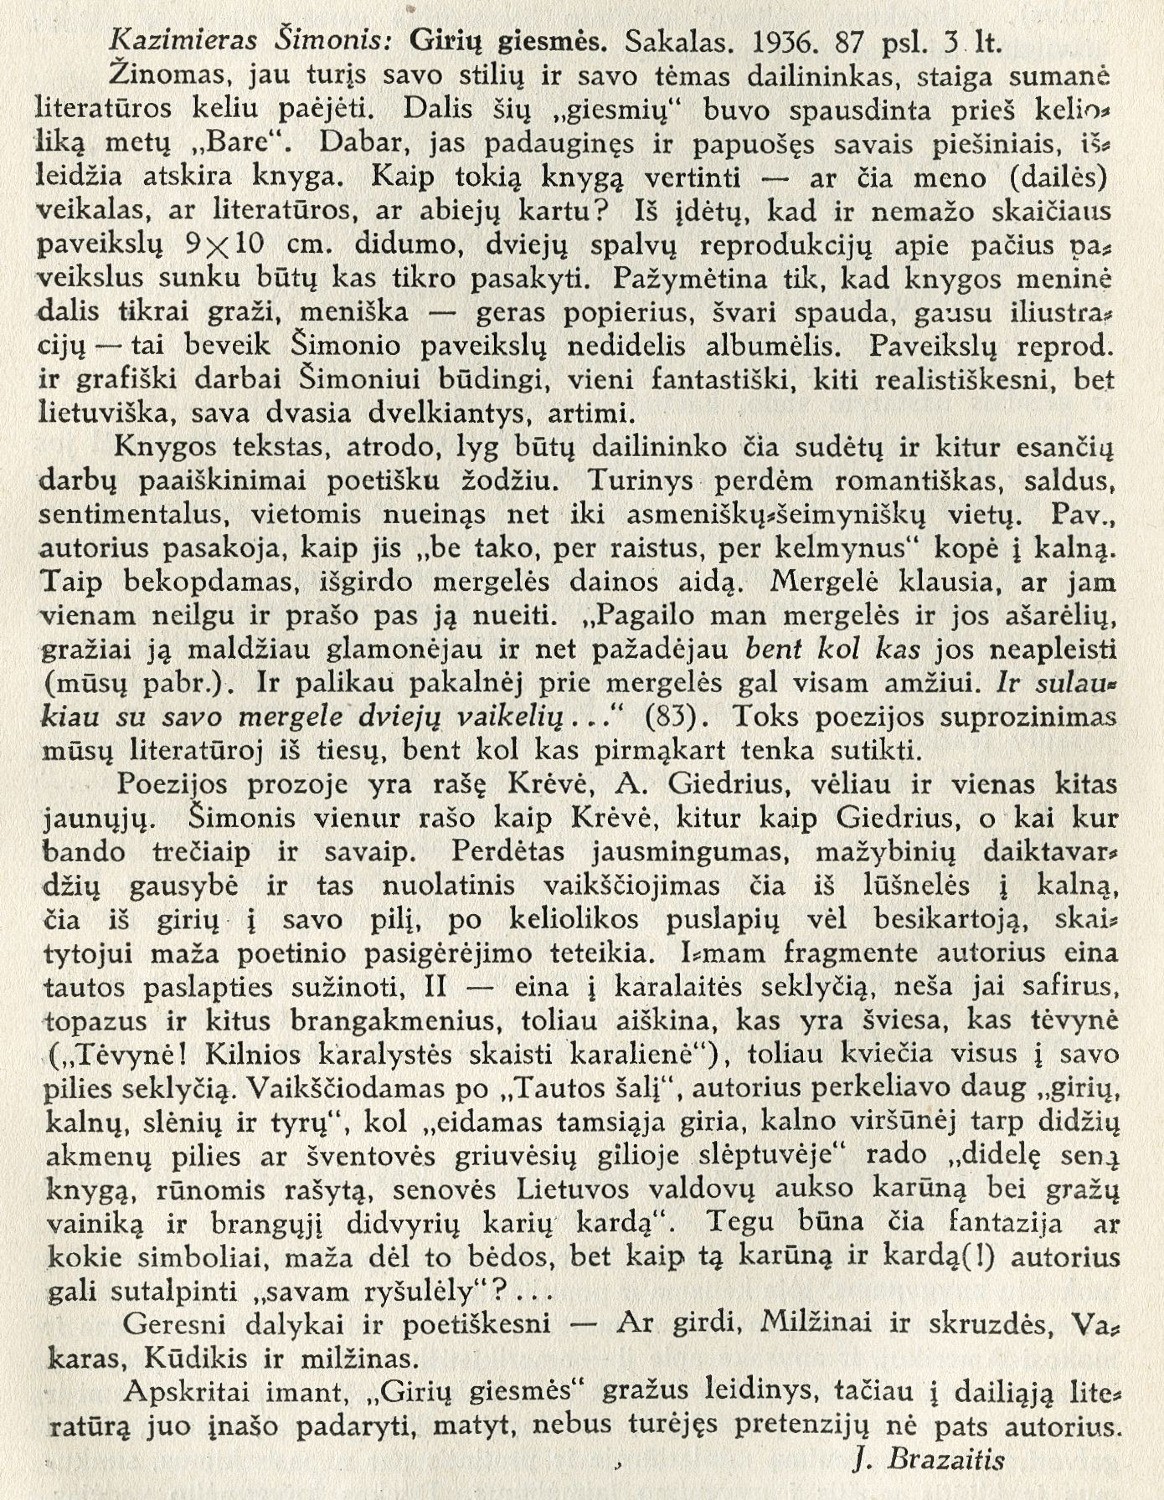 Kazimieras Šimonis: Girių giesmės: [rec.] / J. Brazaitis. – Rec. kn.: Girių giesmės / Kazimieras Šimonis. – Kaunas: Sakalas, 1936 // Židinys. – 1936, Nr. 3, p. 363